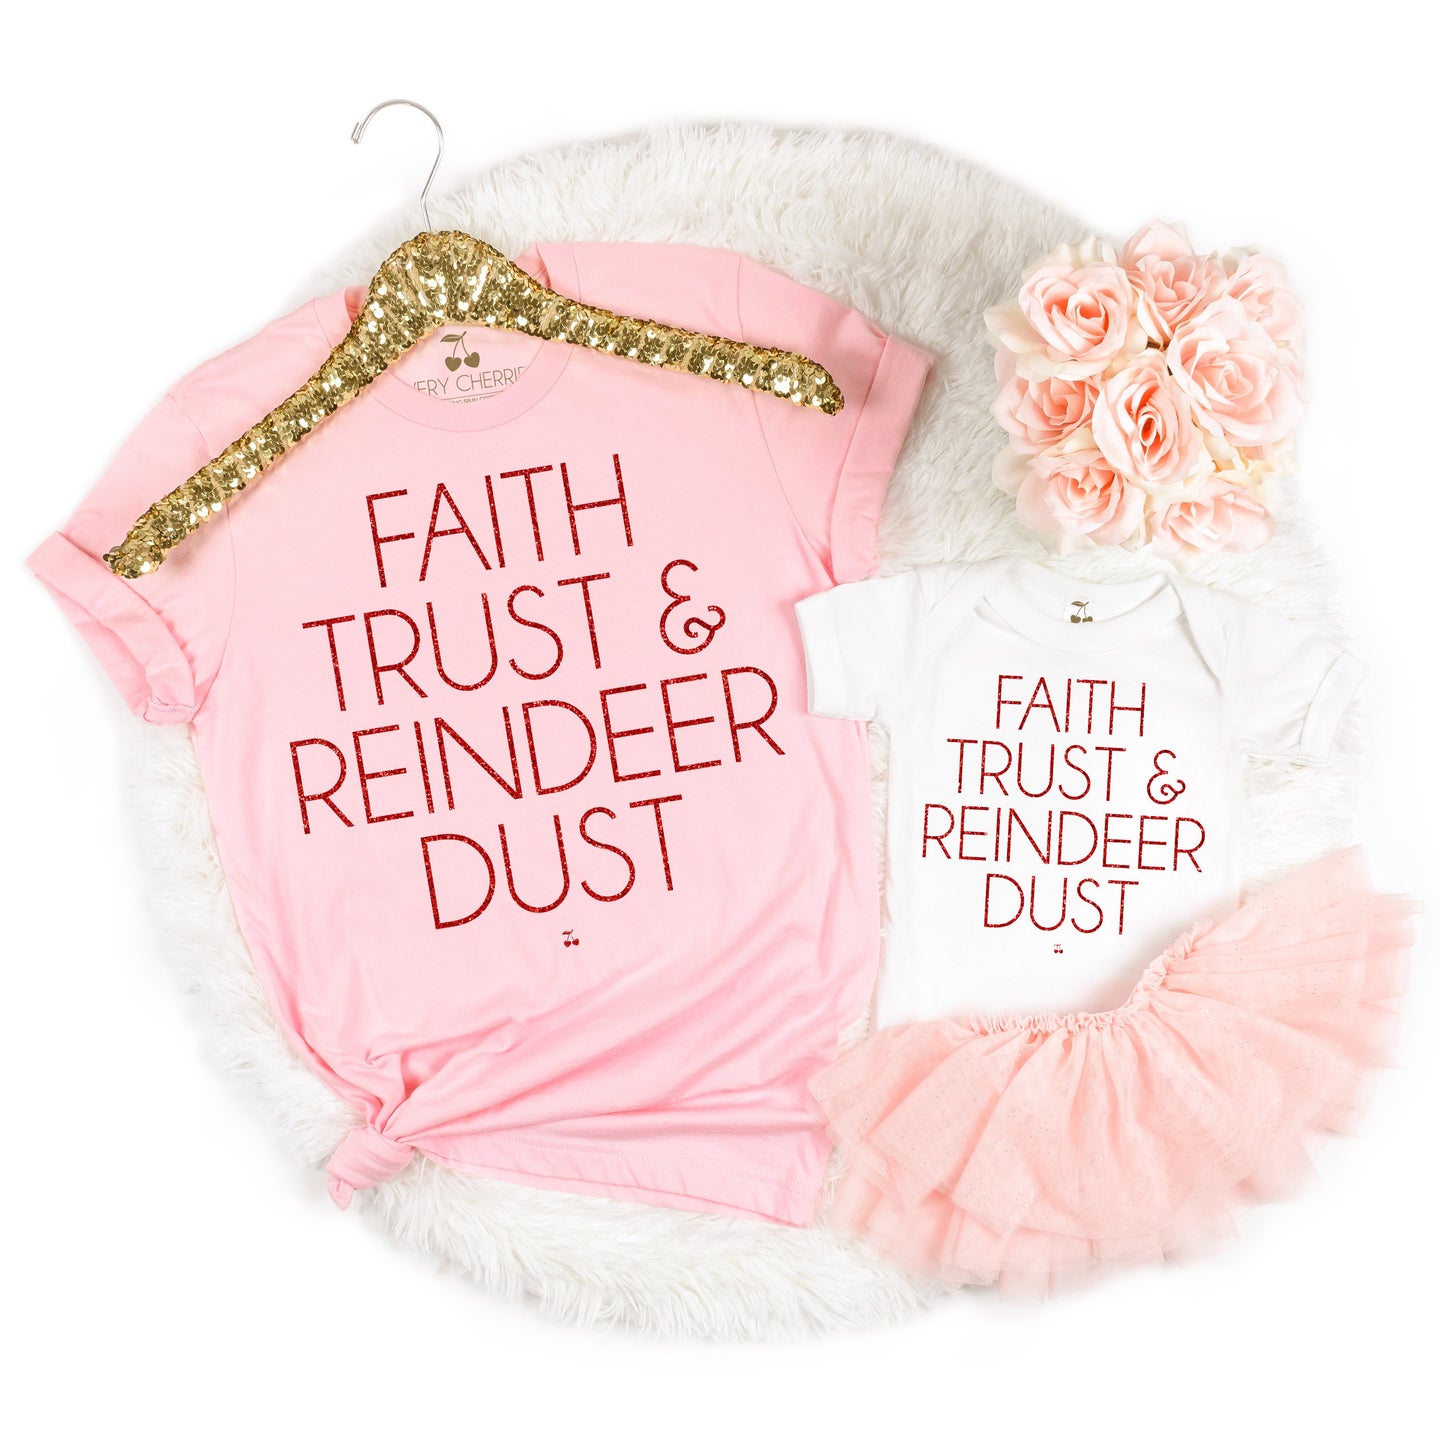 Faith Trust Reindeer Dust Graphic Tee